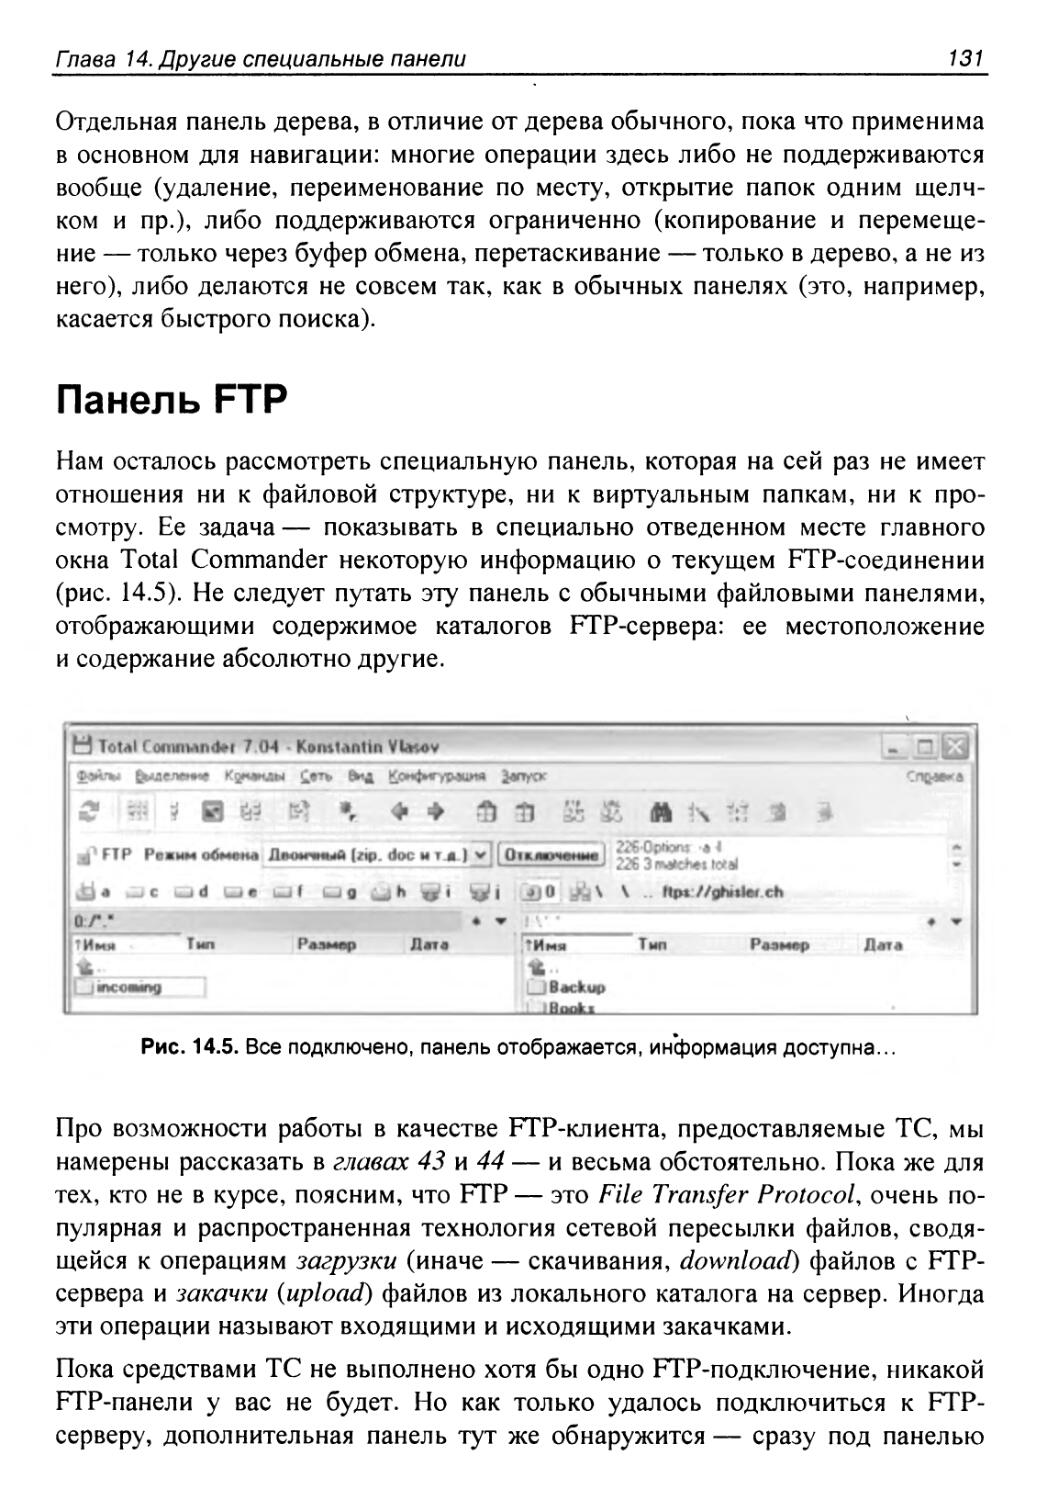 Панель FTP